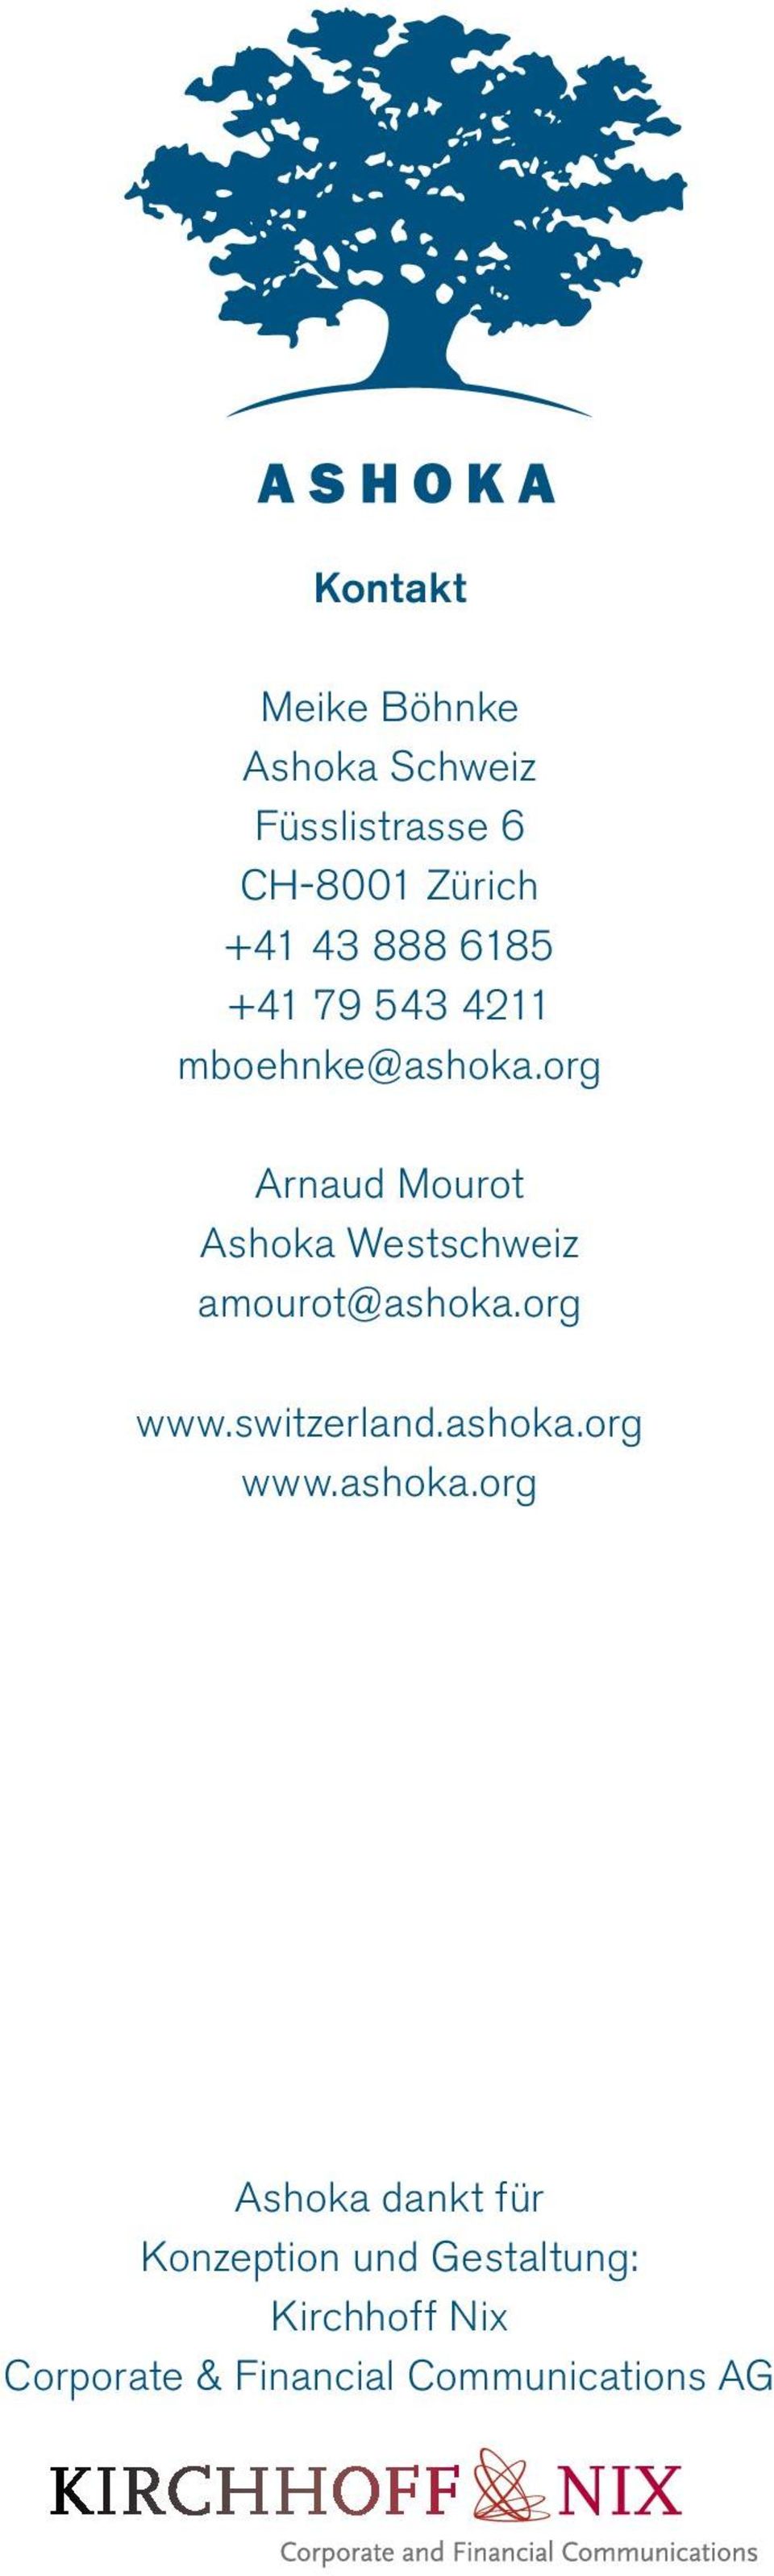 org Arnaud Mourot Ashoka Westschweiz amourot@ashoka.org www.switzerland.